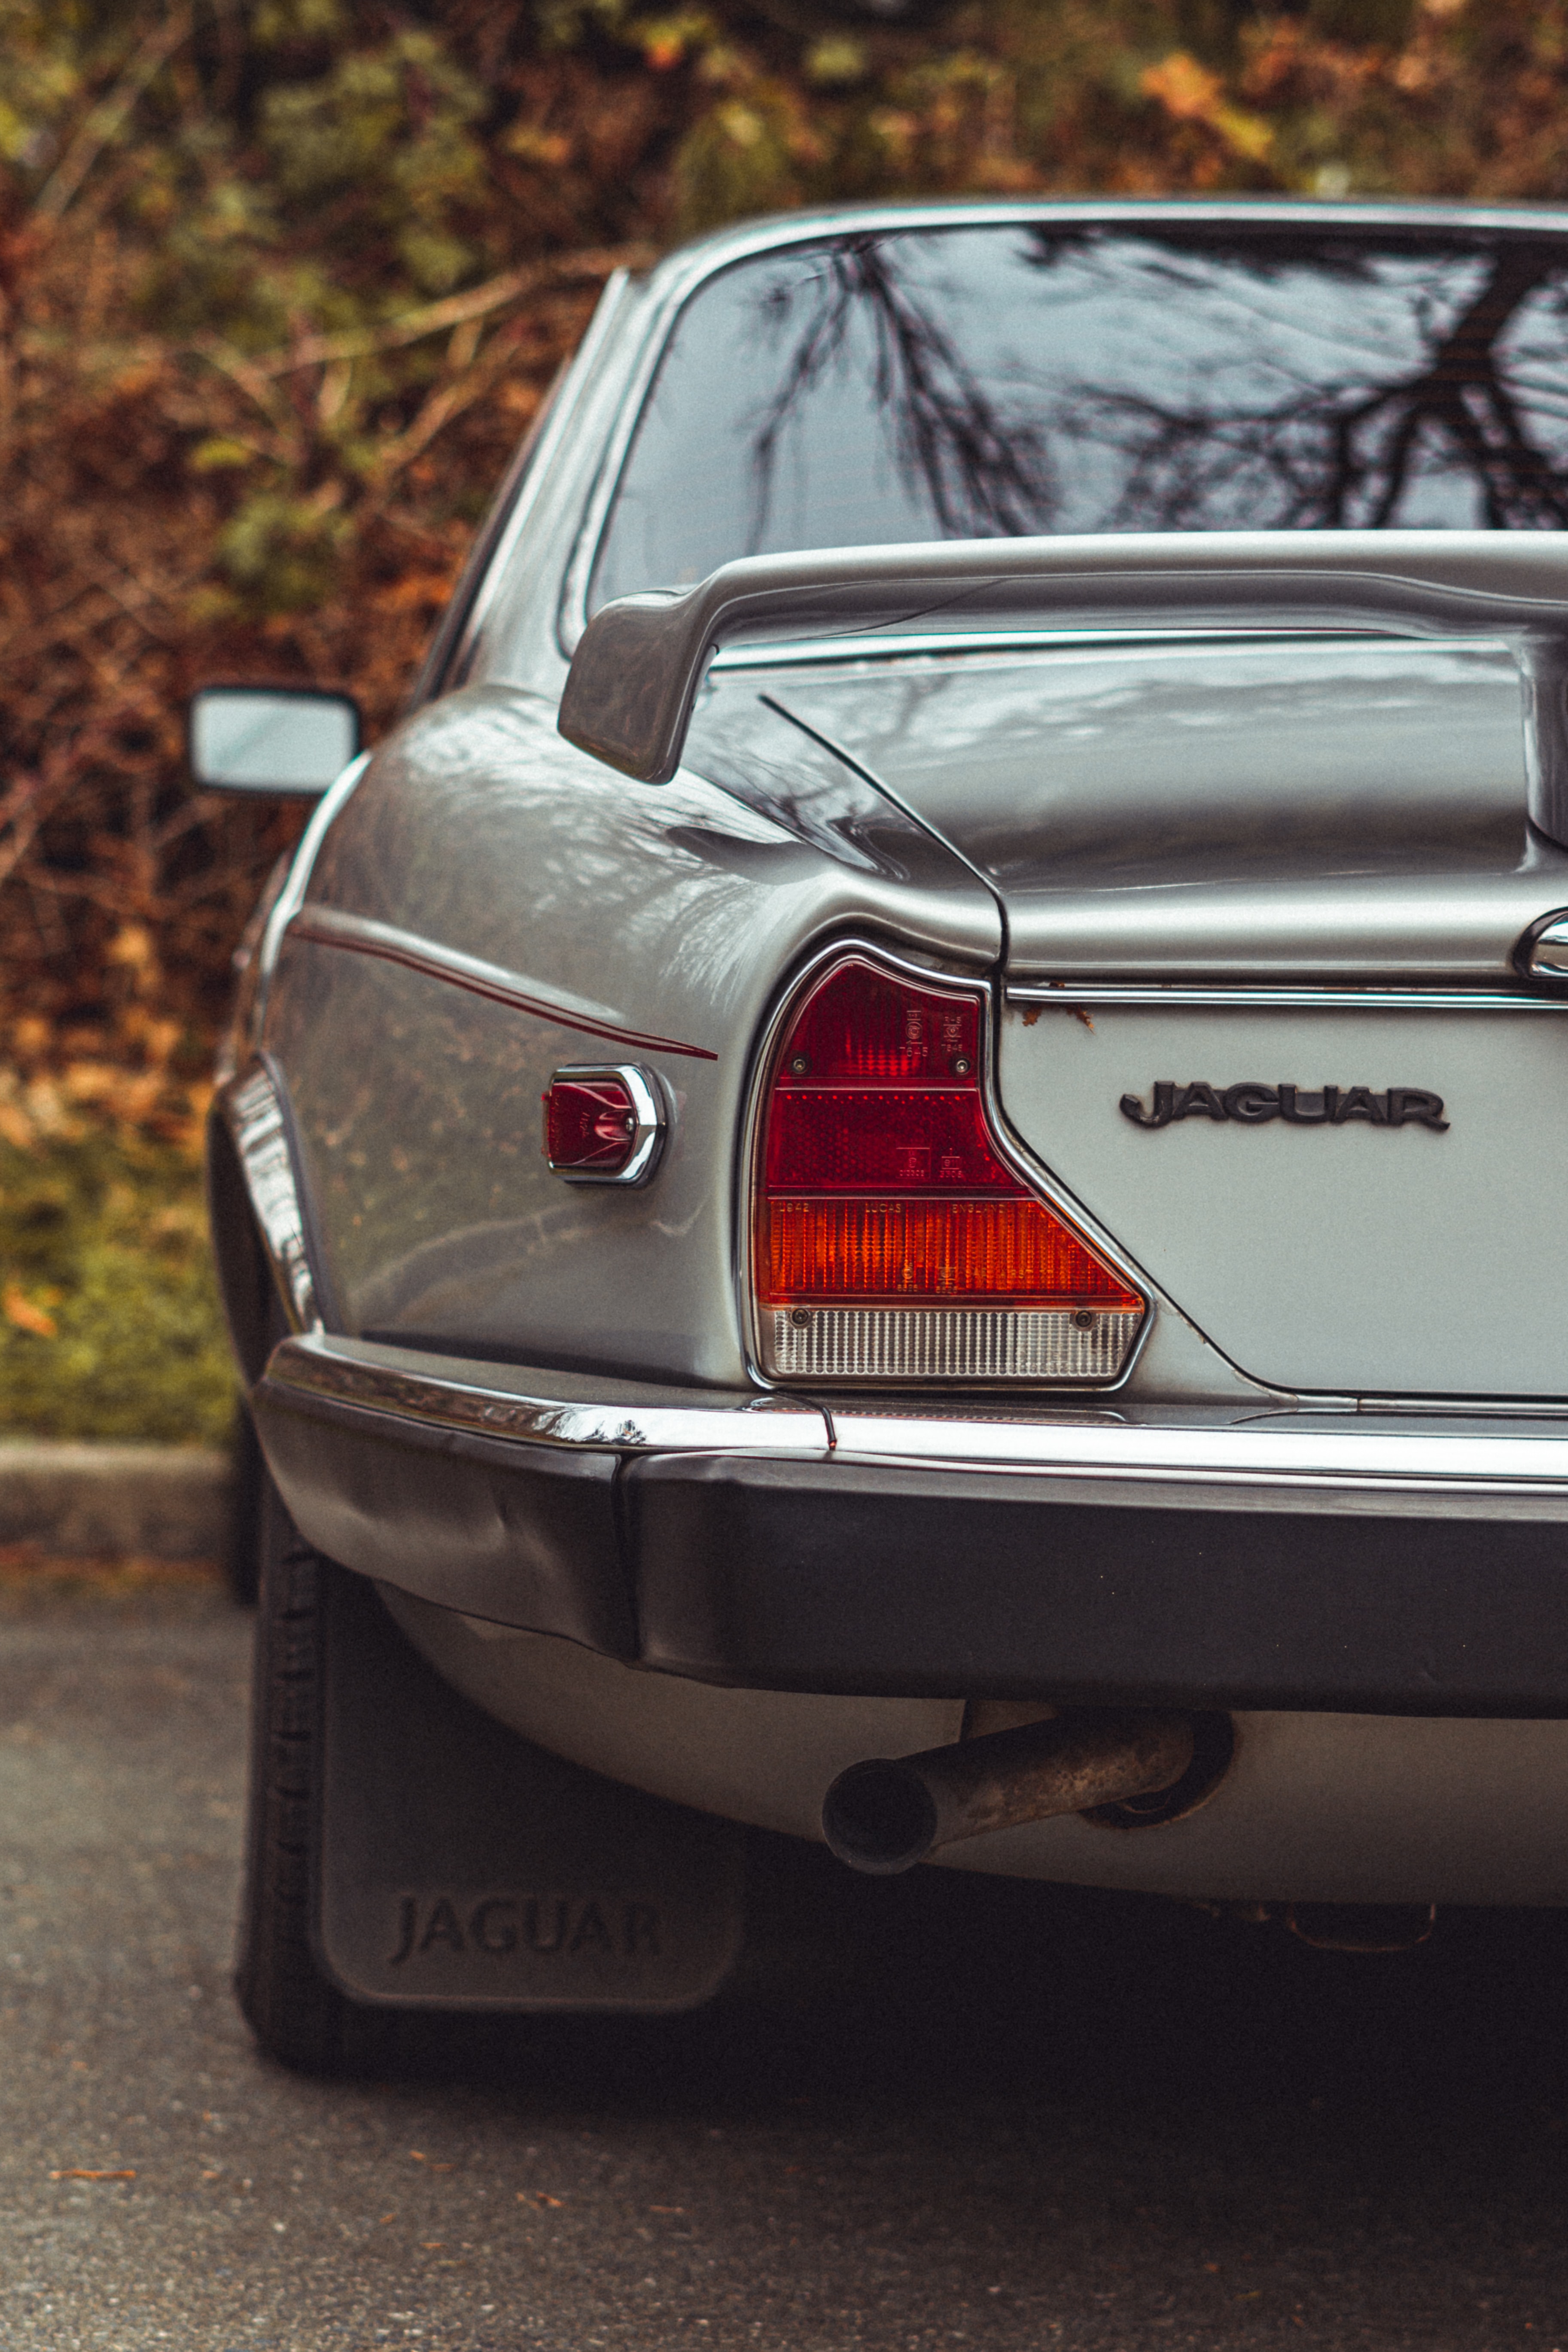 desktop Images jaguar, cars, car, machine, vintage, back view, rear view, retro